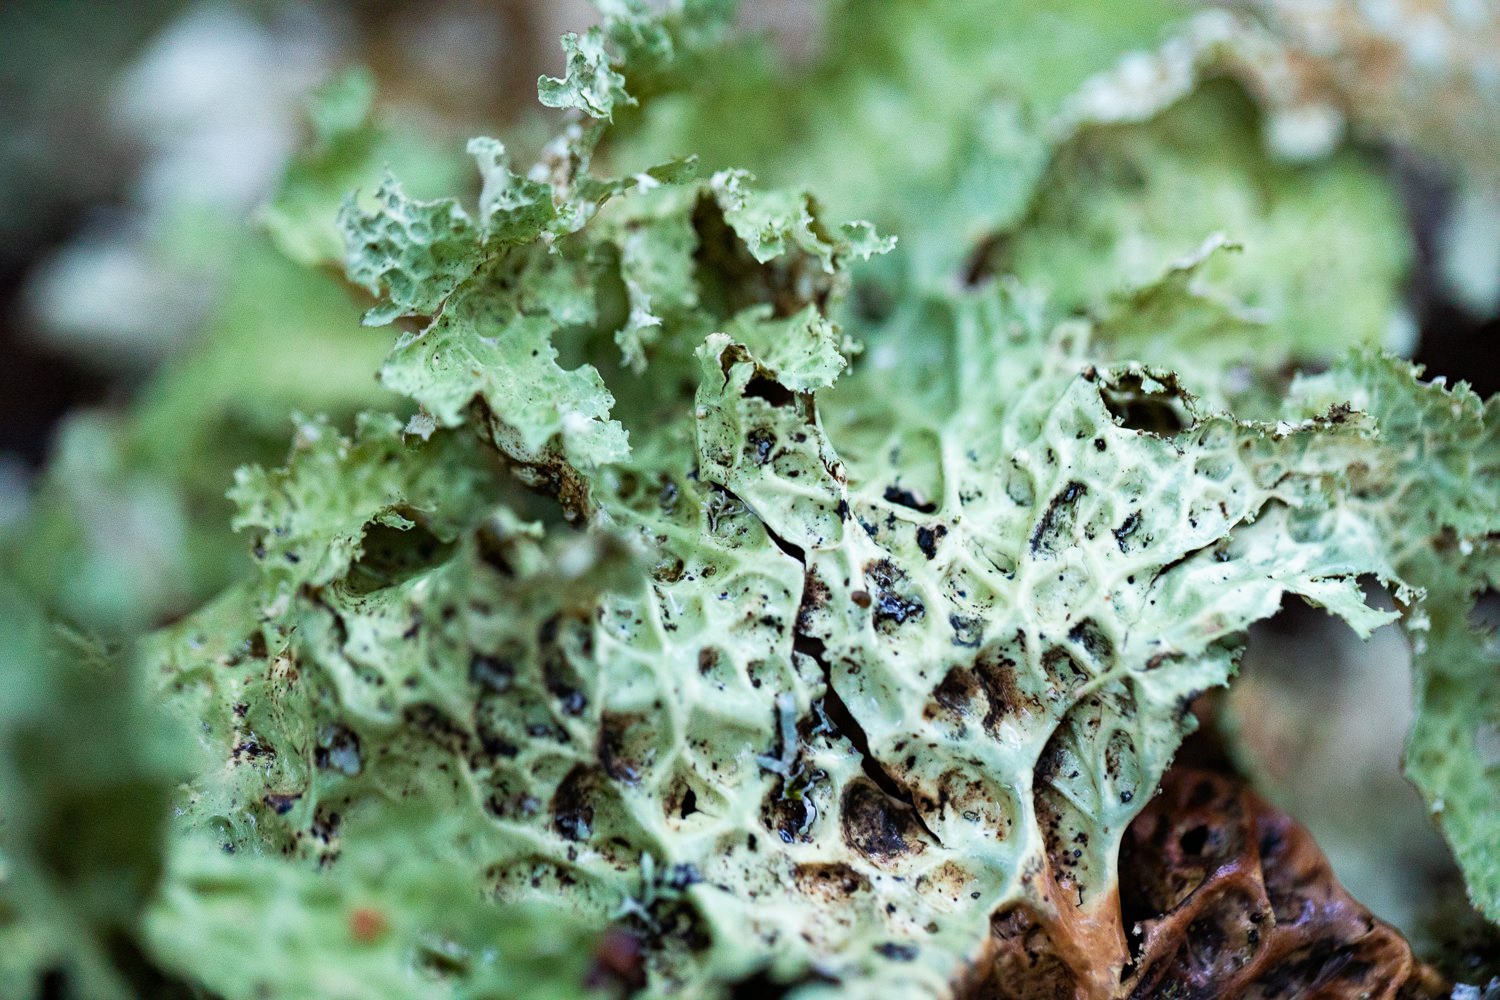 Lobaria lichen